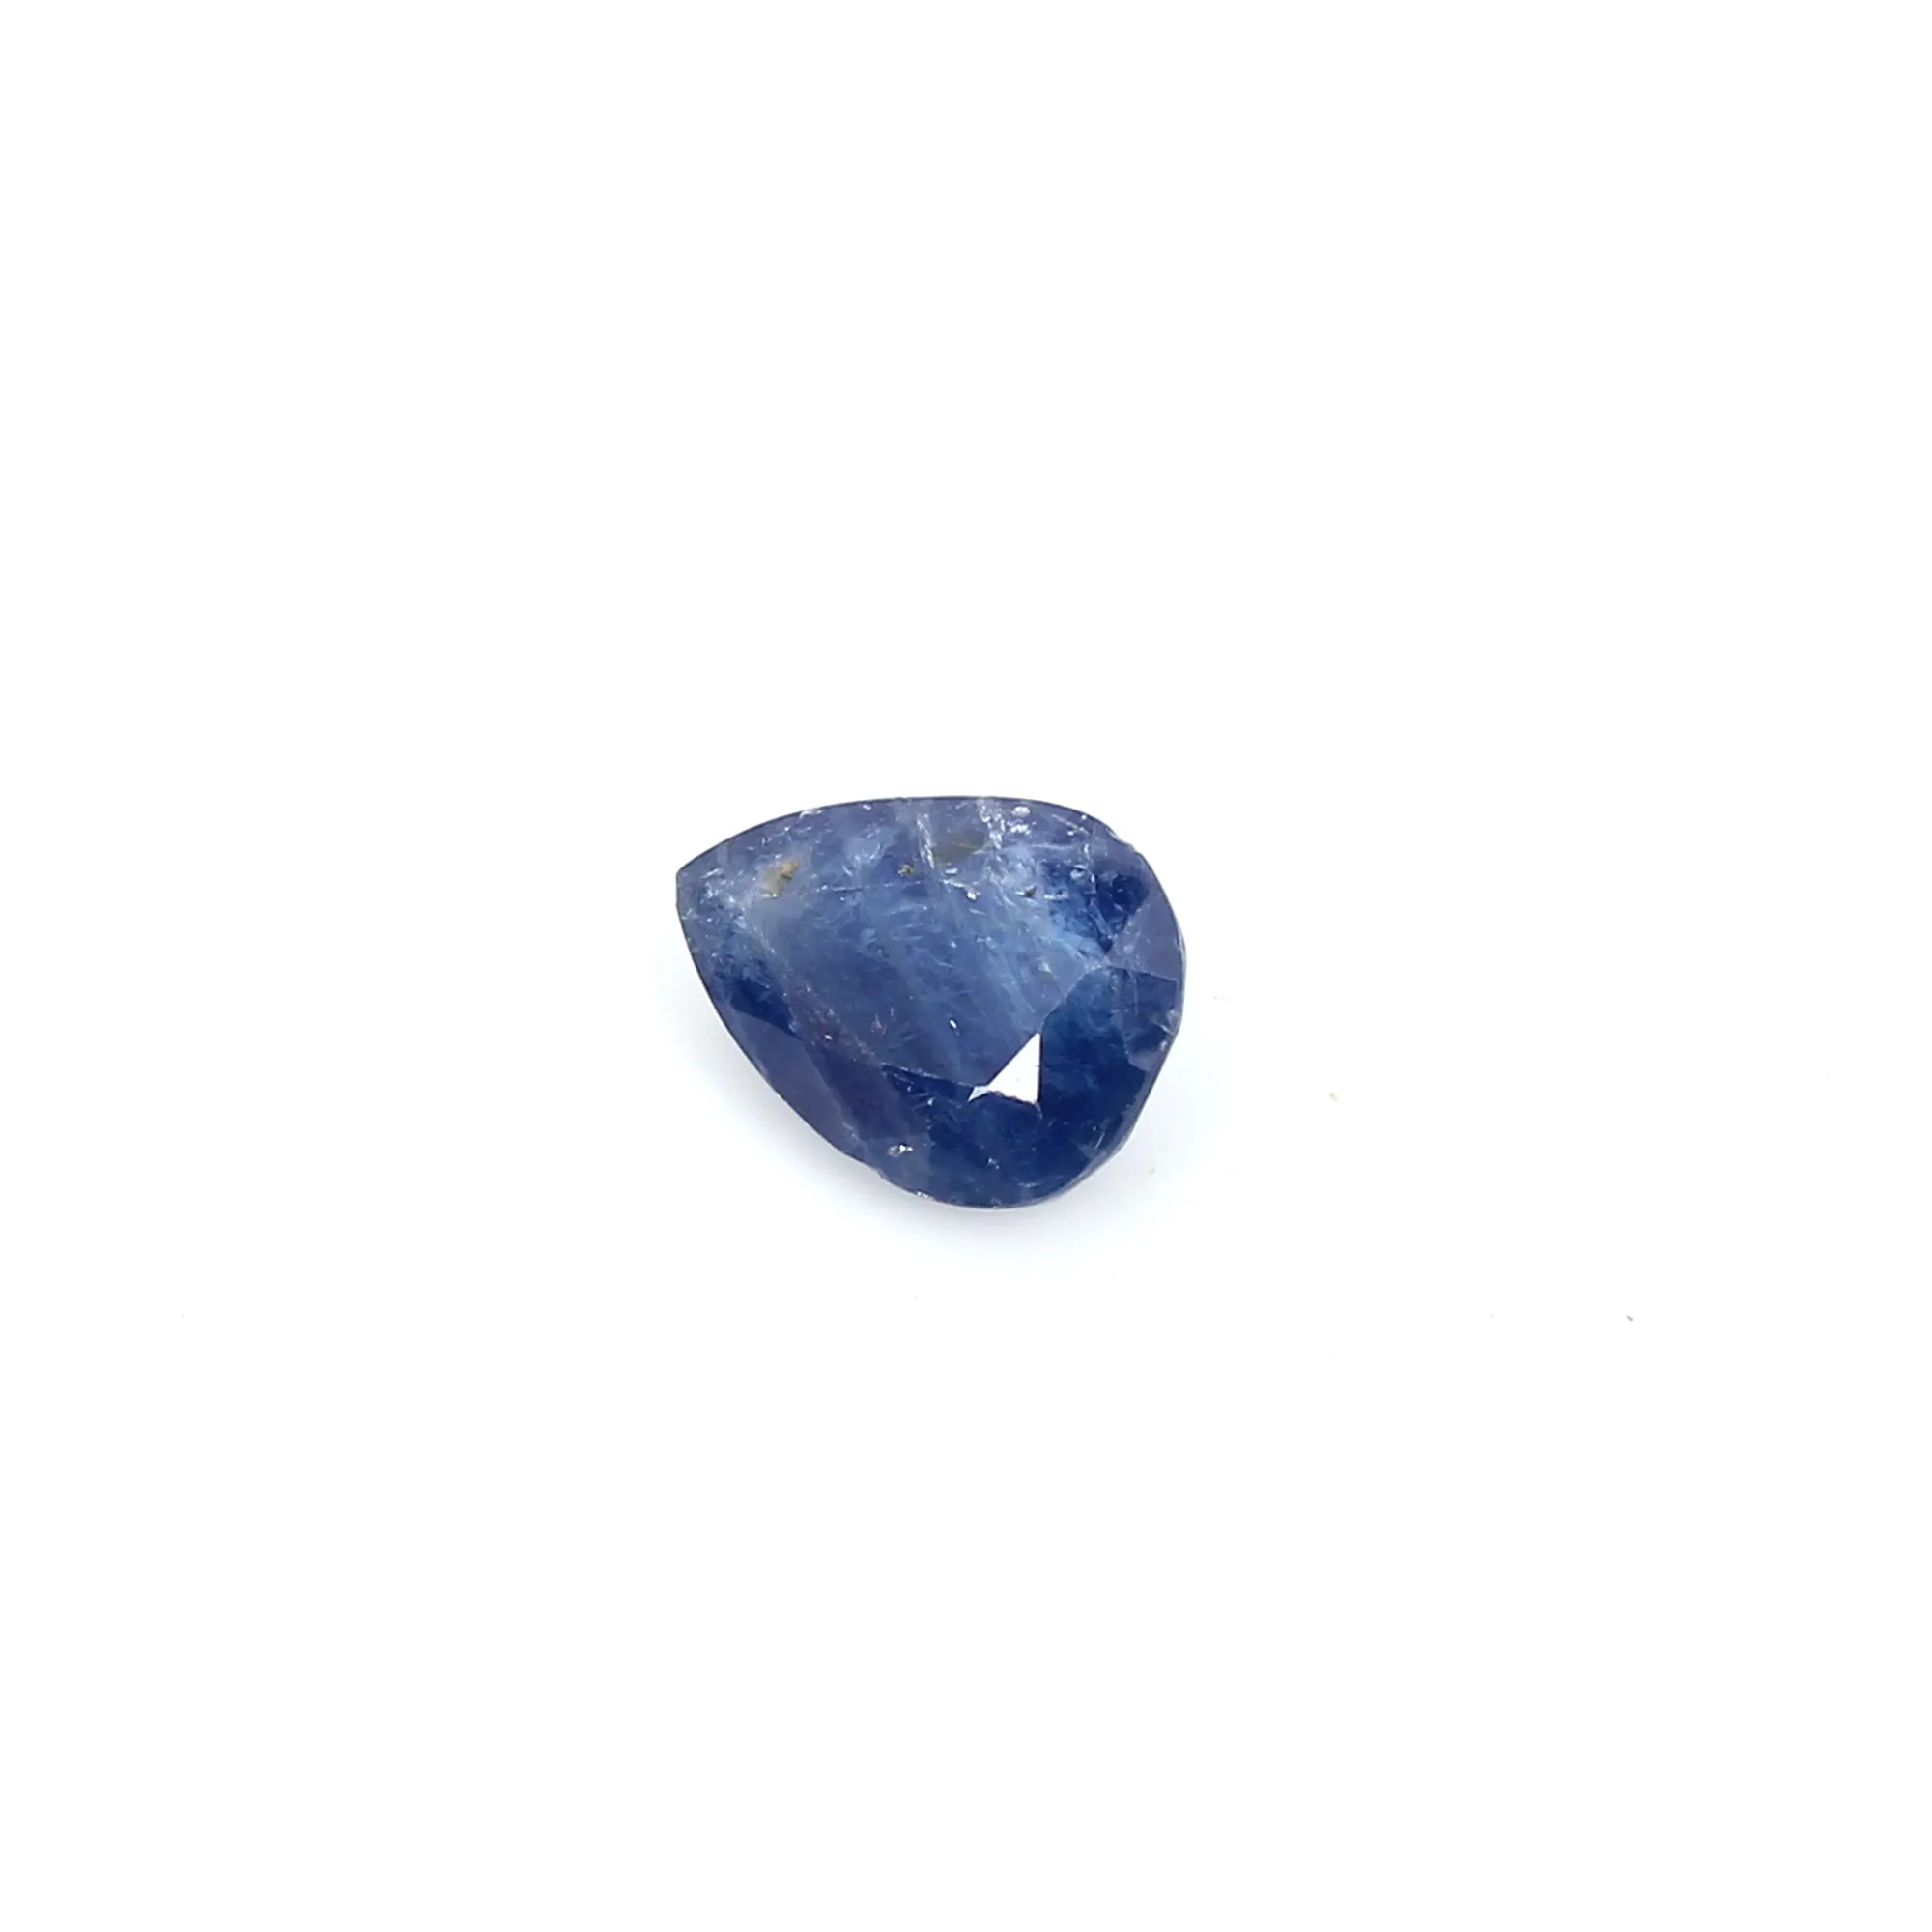 Blauer Saphir 8x6mm Perlens chliff 1,30 ct loser Edelstein zur Herstellung von Schmuck